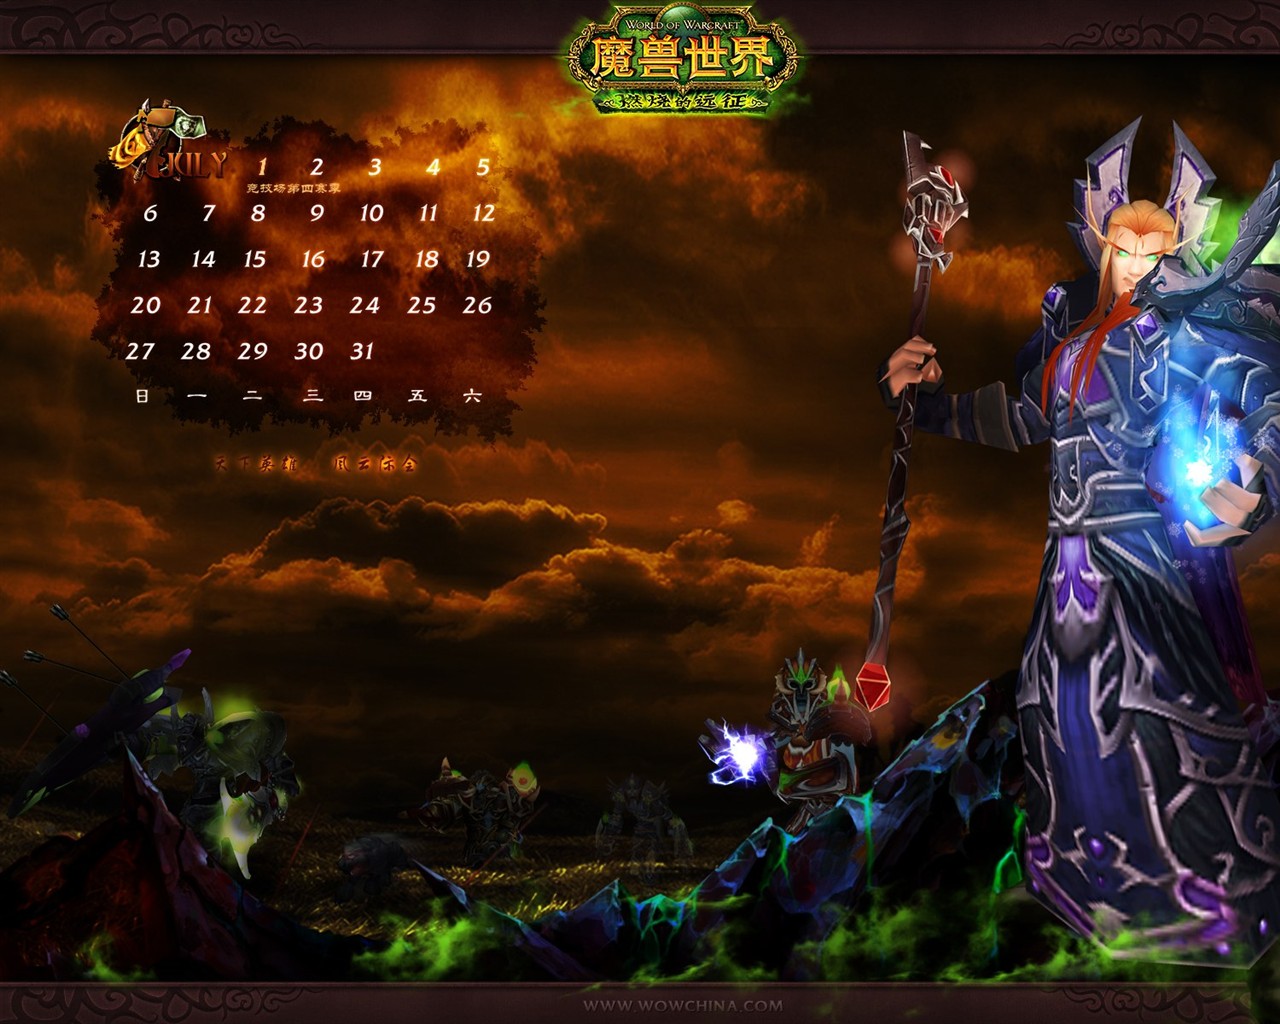 Мир Warcraft: официальные обои The Burning Crusade в (2) #26 - 1280x1024